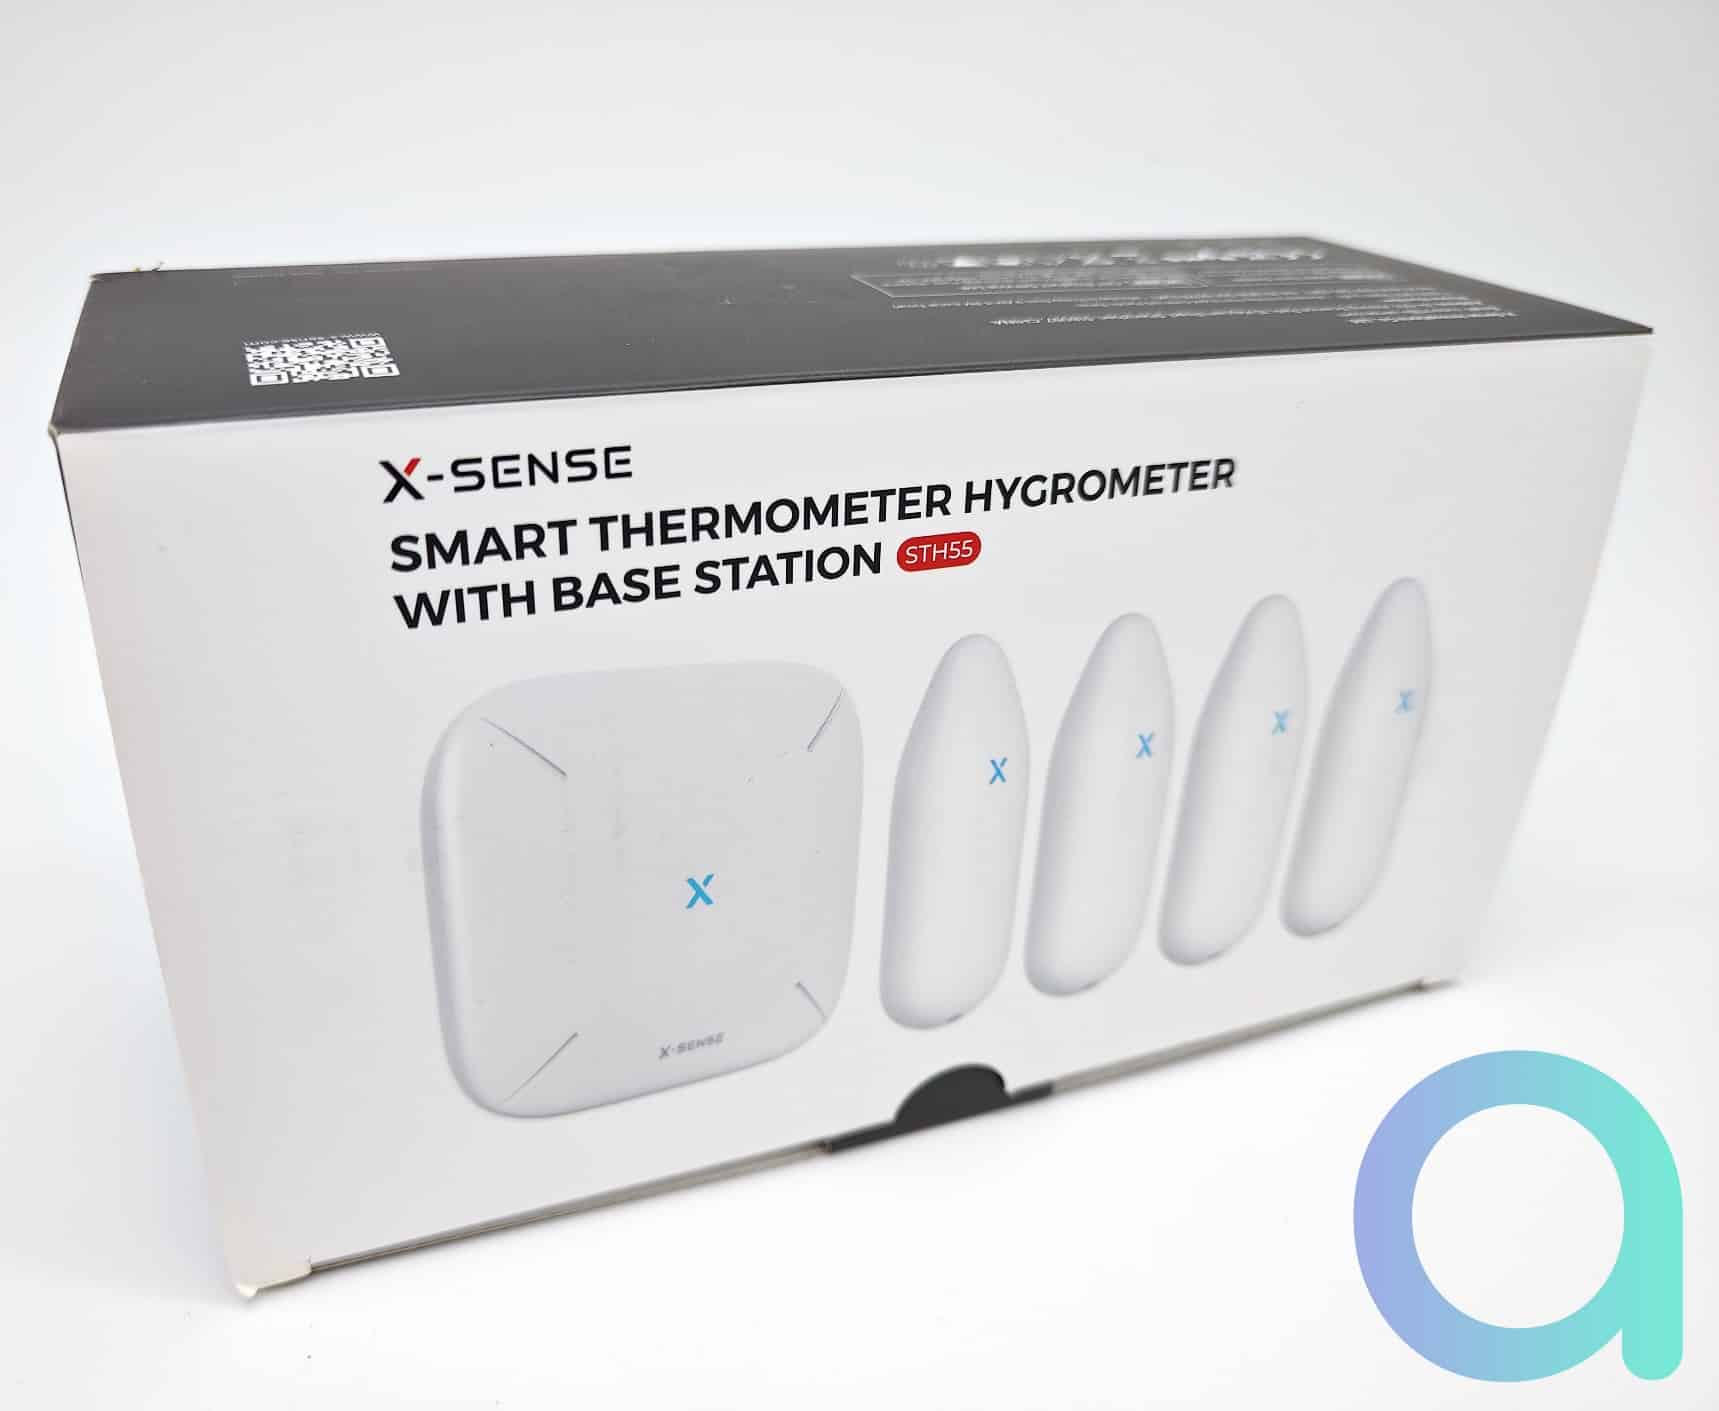 Test du thermomètre connecté Heiman ZigBee pour box domotique – Les Alexiens